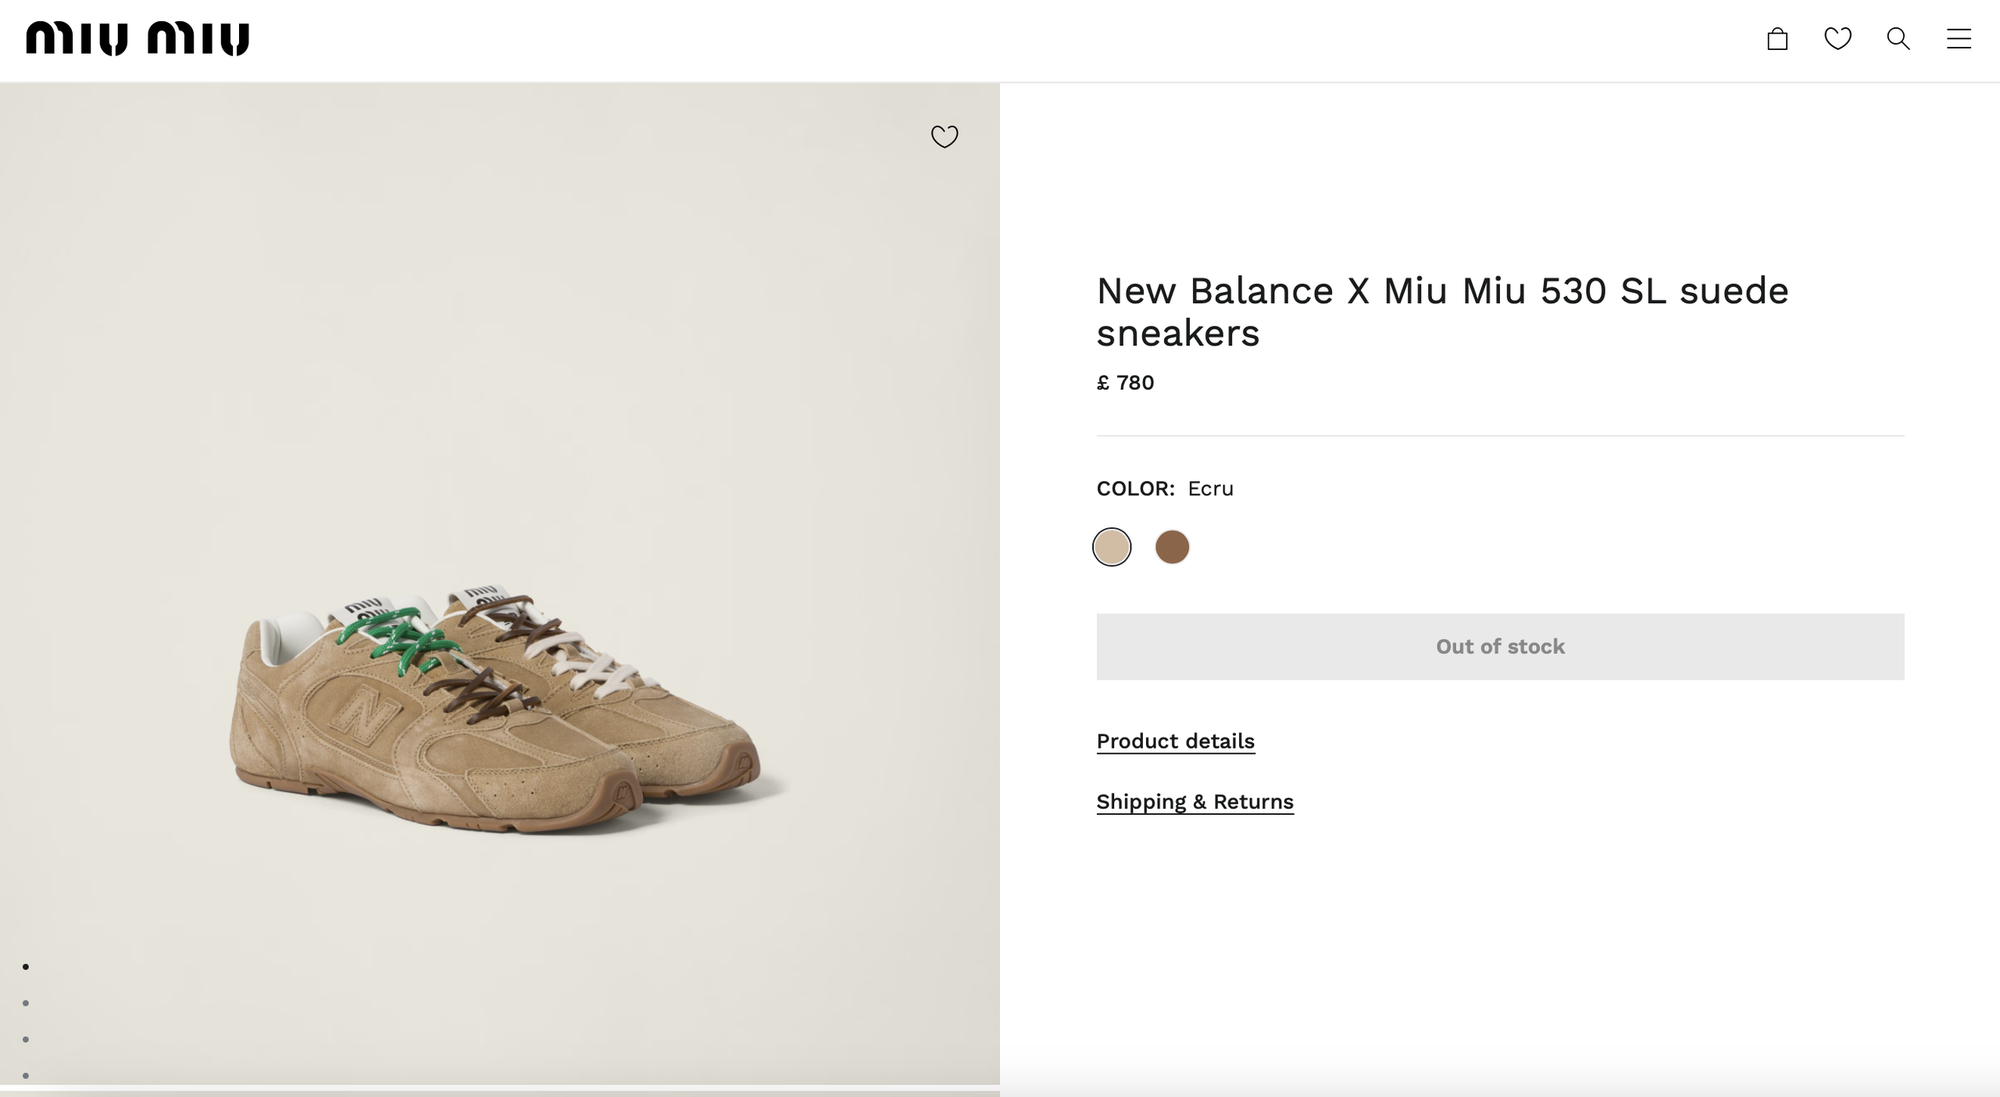 Đôi giày xinh yêu cực kì của Miu Miu x New Balance: Mới ra đã gây sốt, chưa đến 1 ngày đã sold out- Ảnh 11.